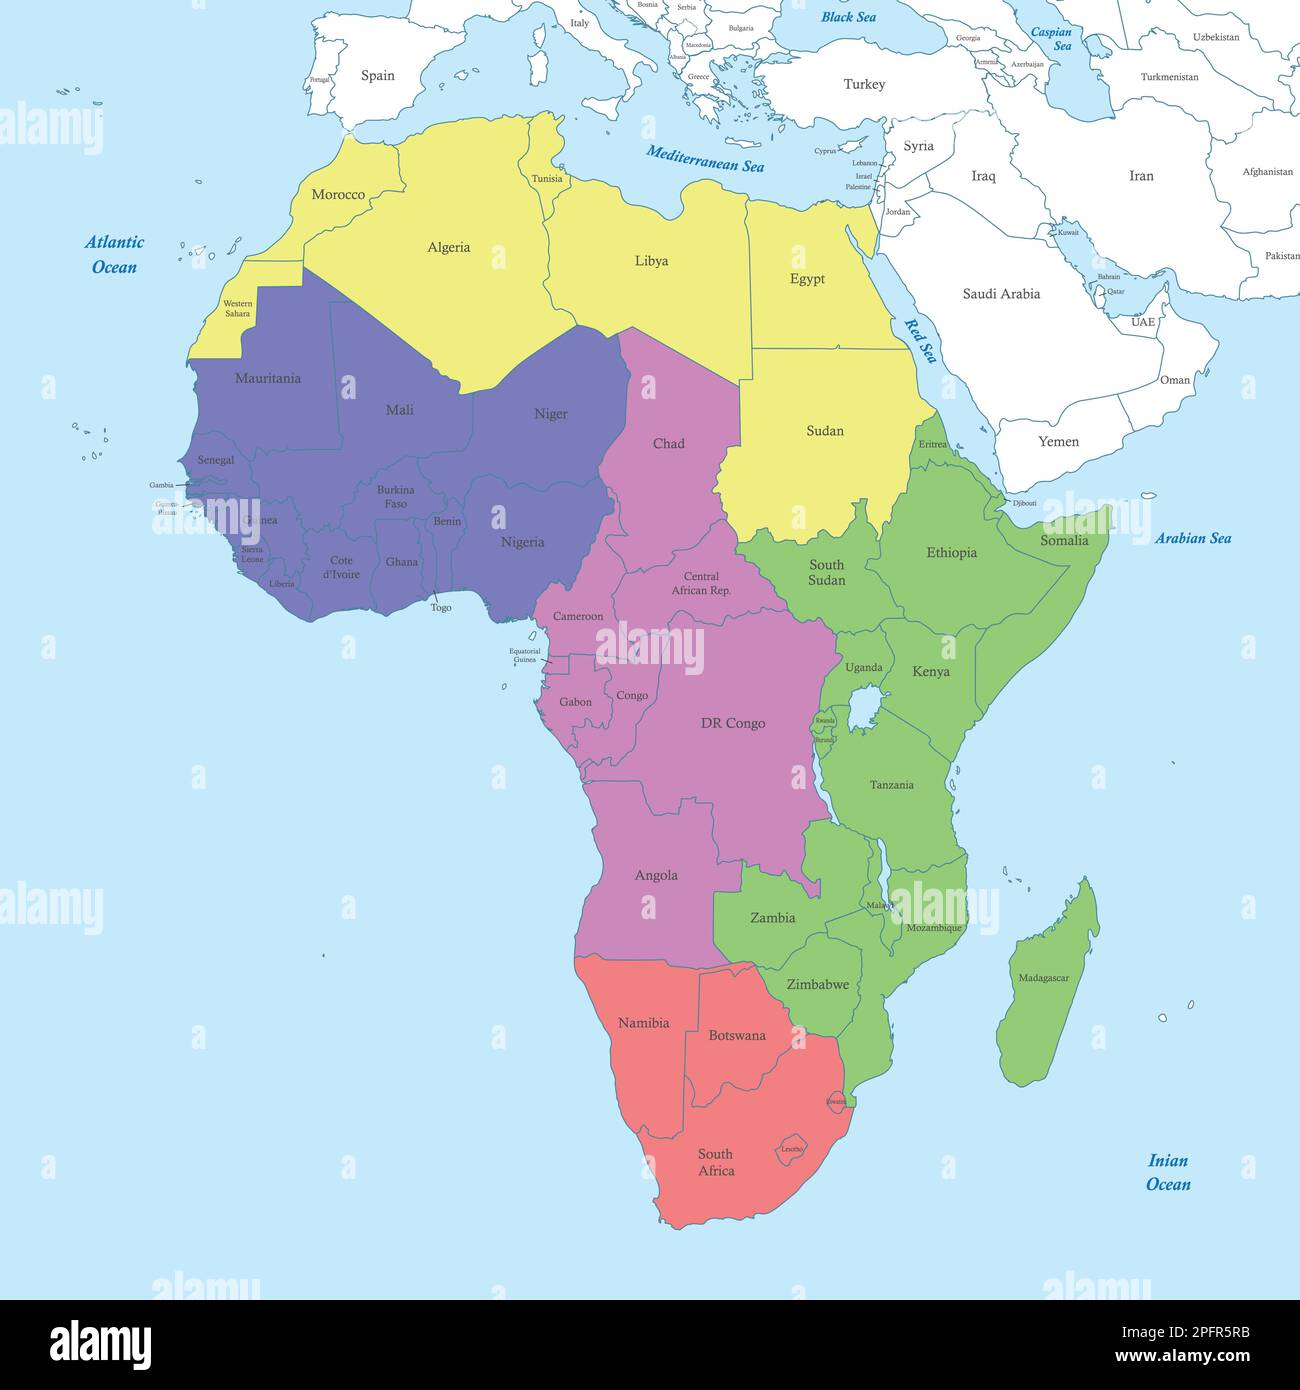 Mappa a colori politica dell'Africa con i confini degli stati. Illustrazione Vettoriale